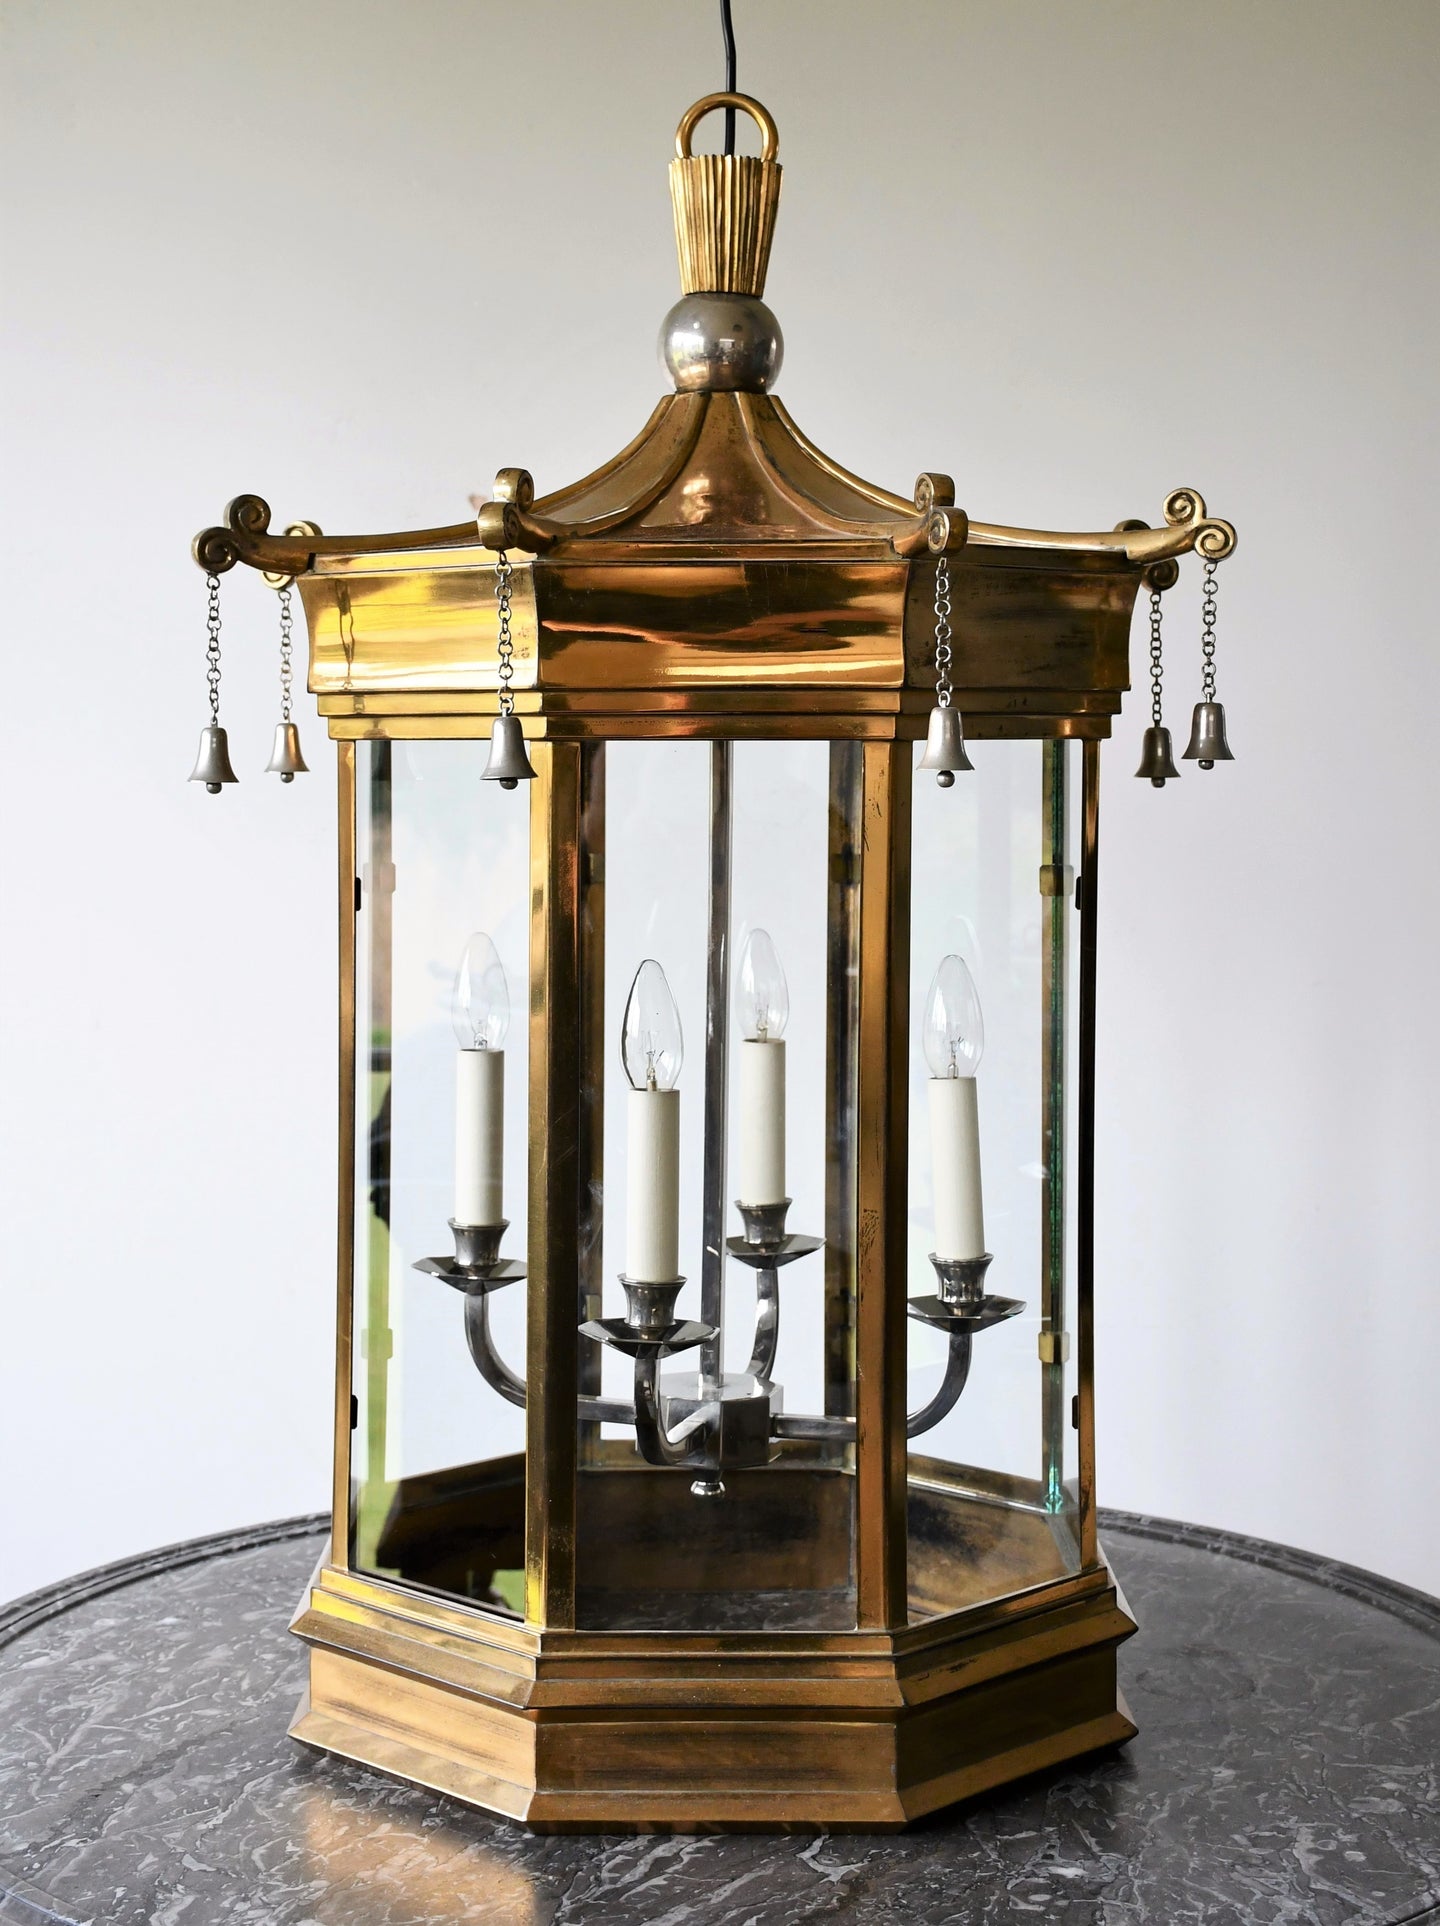 Charles Edwards - Large Pagoda Bell Lantern